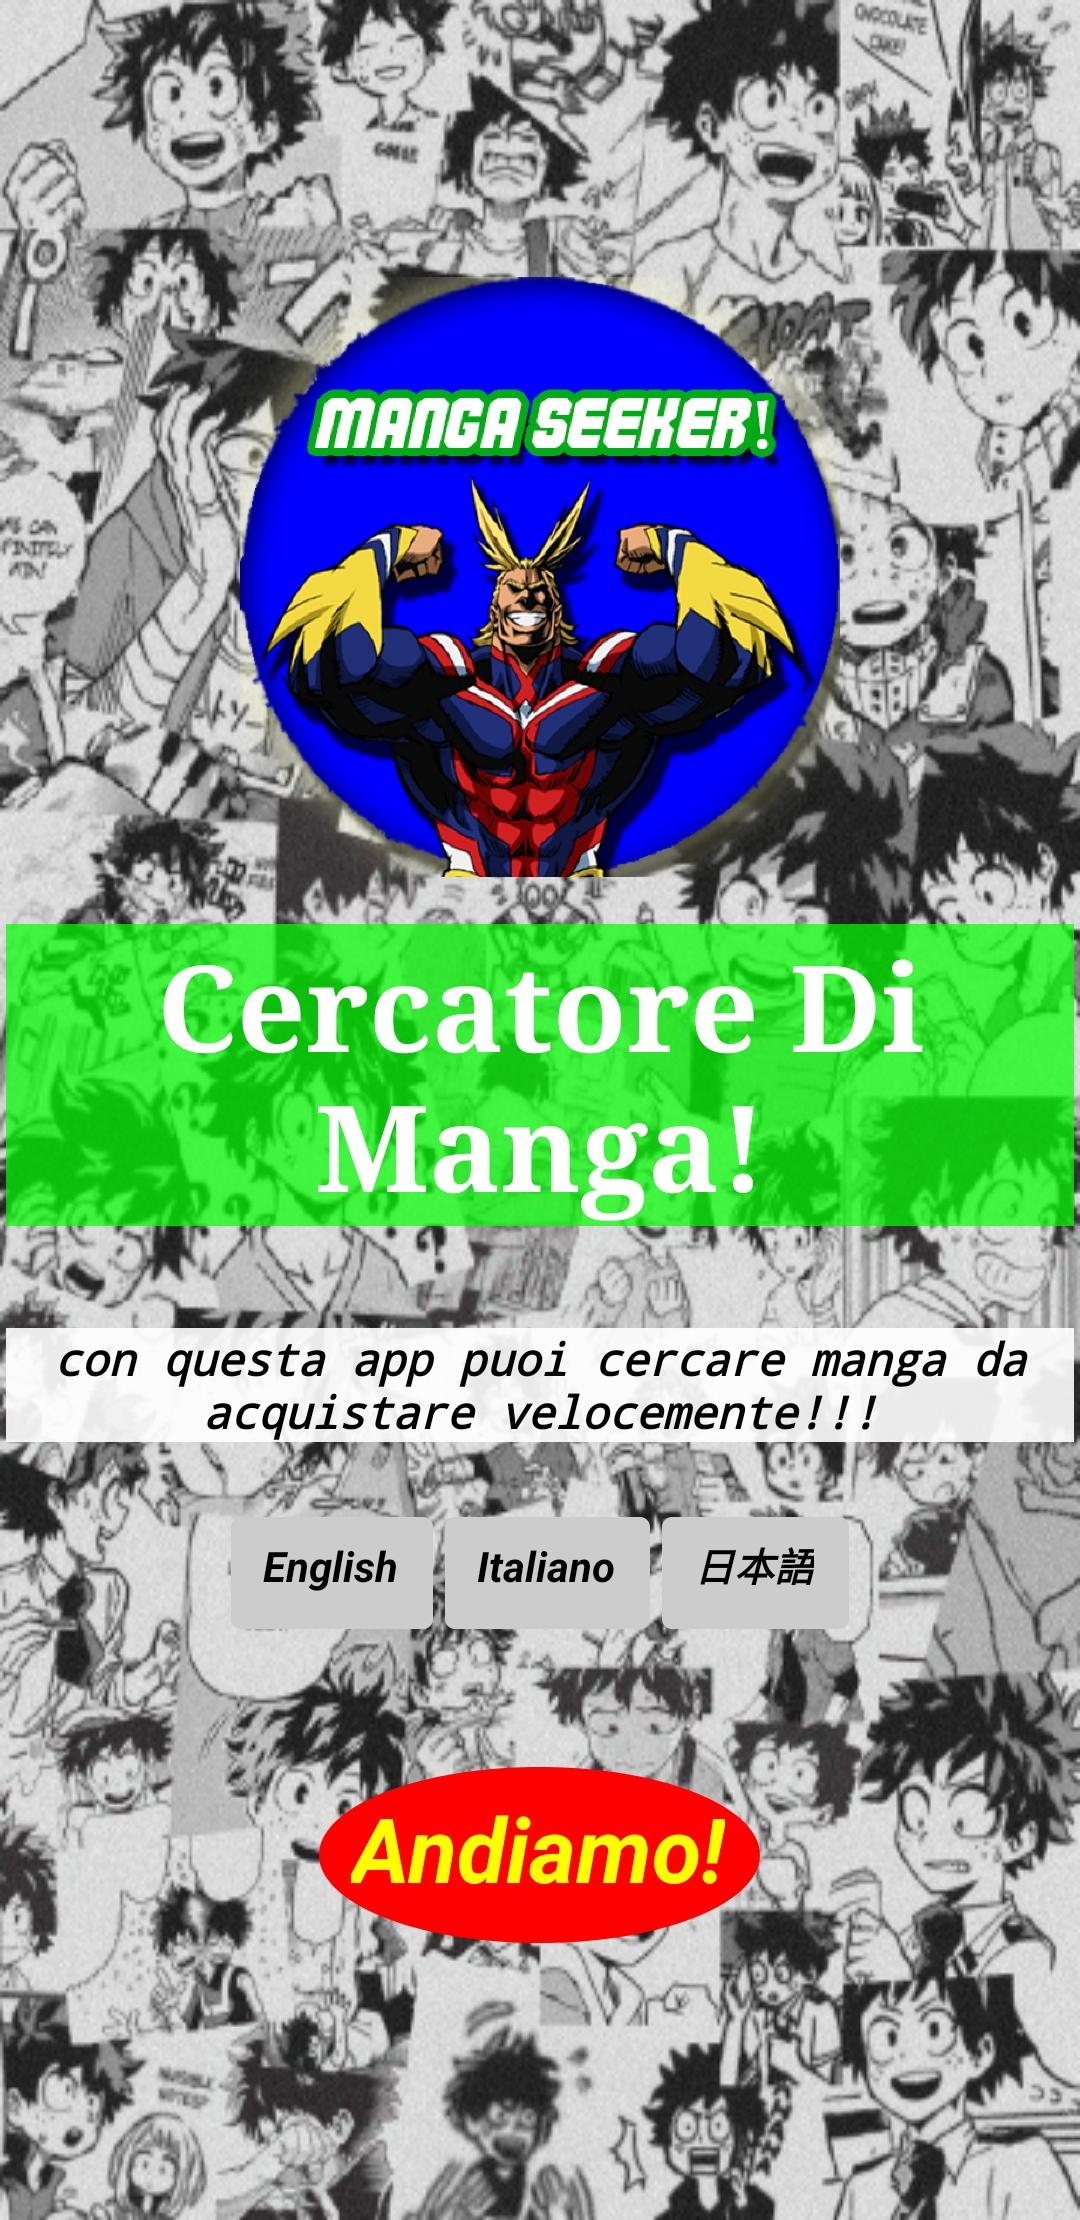 Manga Seeker! 1.1 Screenshot 1